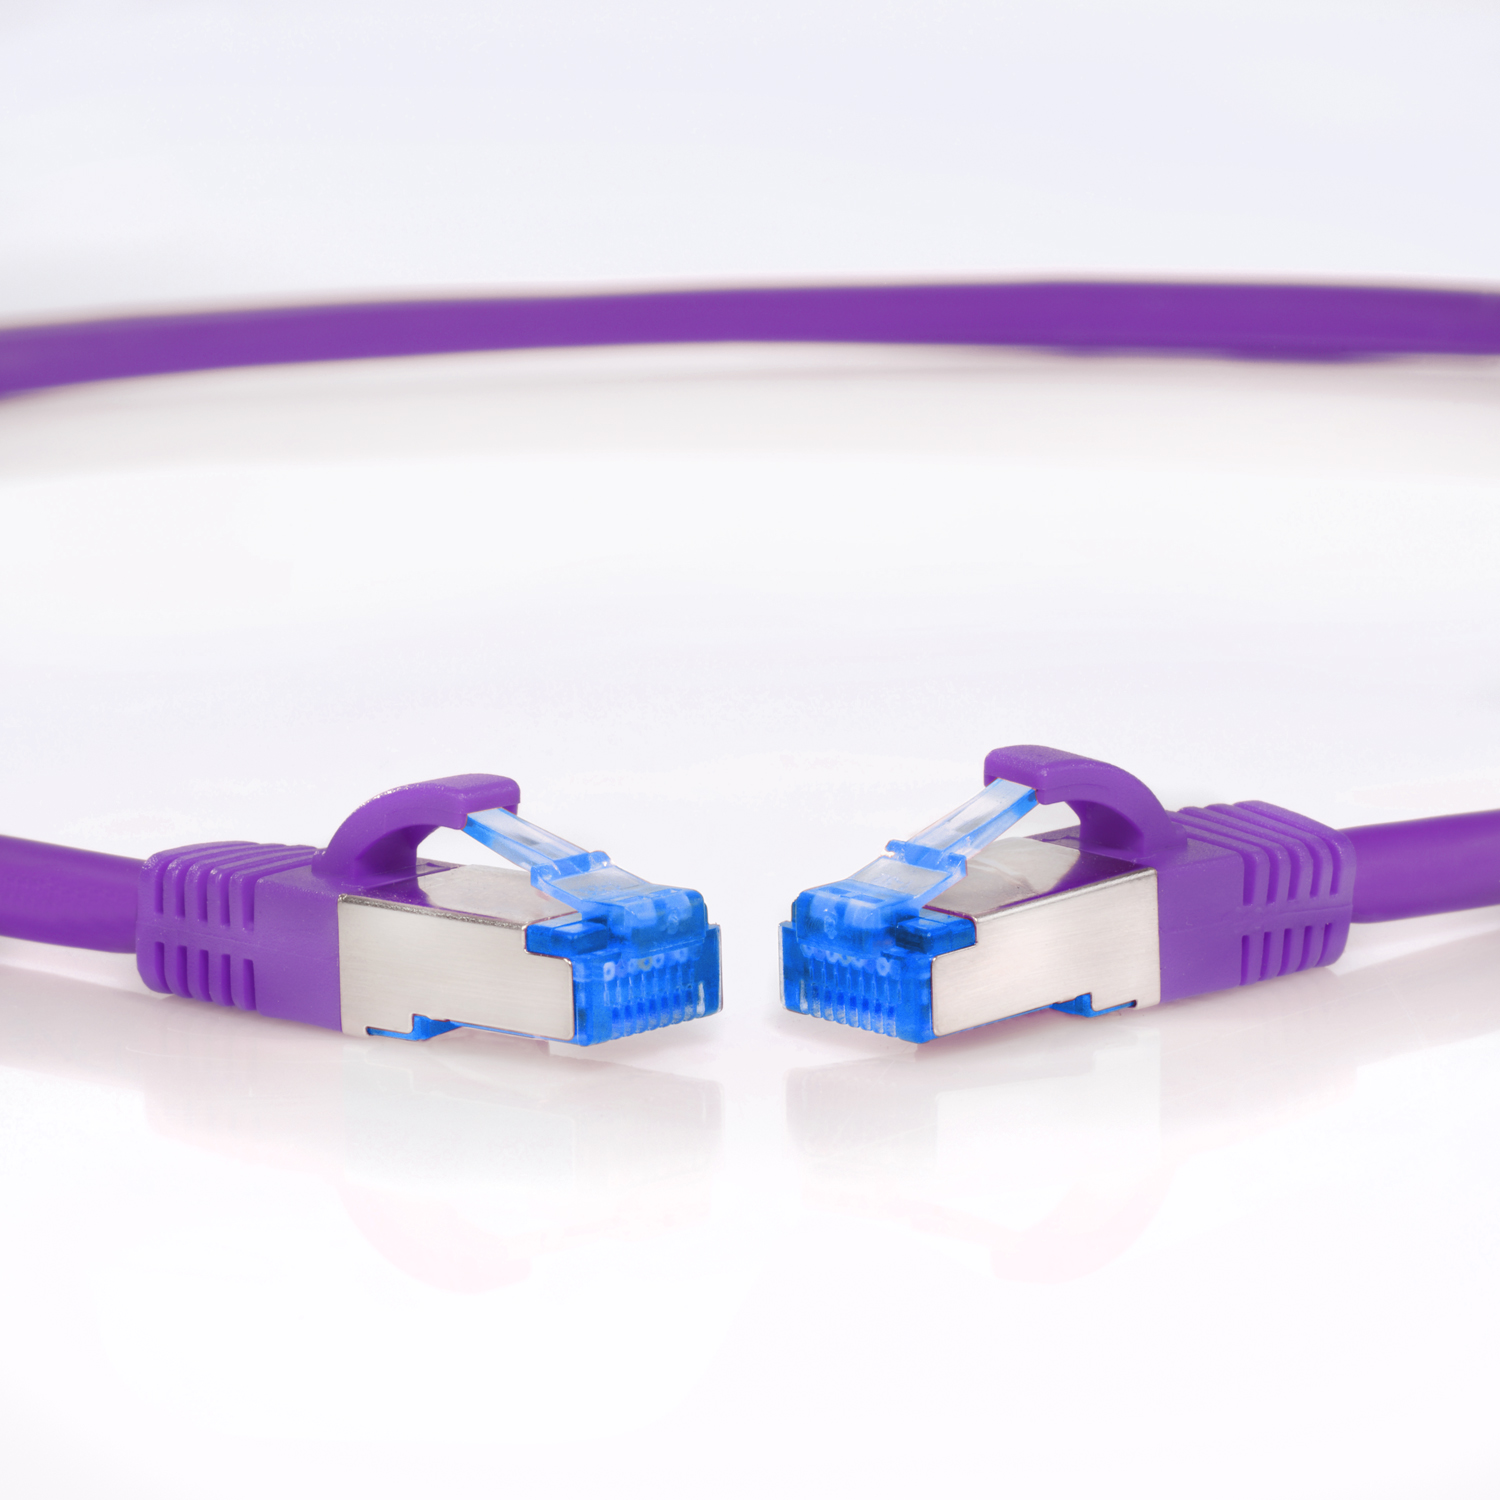 Netzwerkkabel, 1 Pack S/FTP Netzwerkkabel TPFNET m Patchkabel 10er / 10GBit, violett, 1m